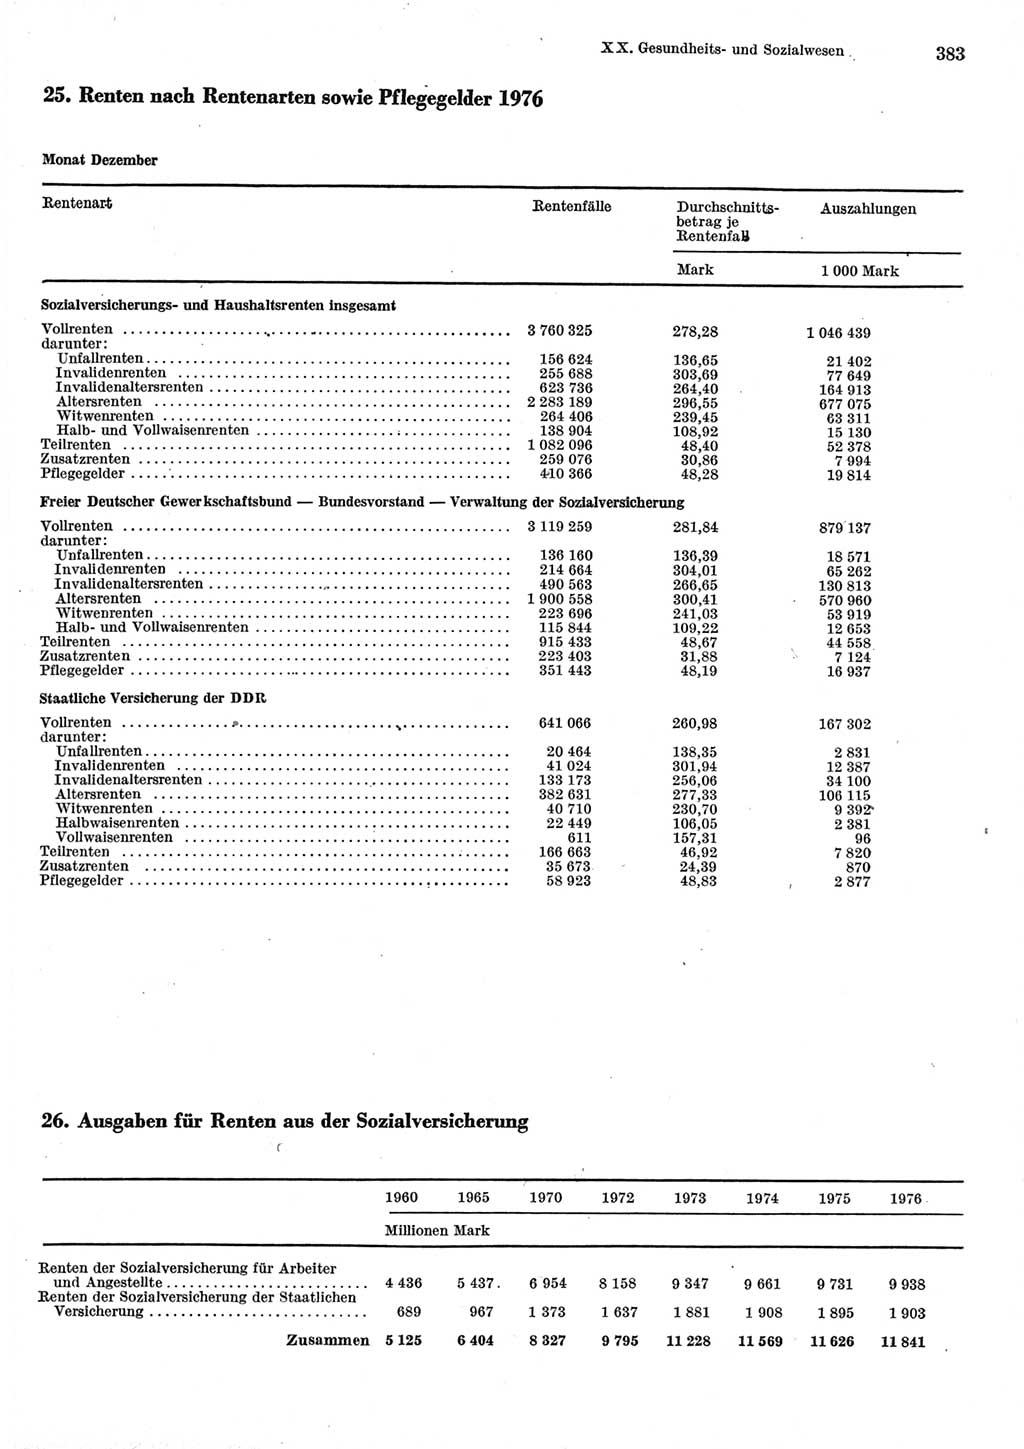 Statistisches Jahrbuch der Deutschen Demokratischen Republik (DDR) 1977, Seite 383 (Stat. Jb. DDR 1977, S. 383)